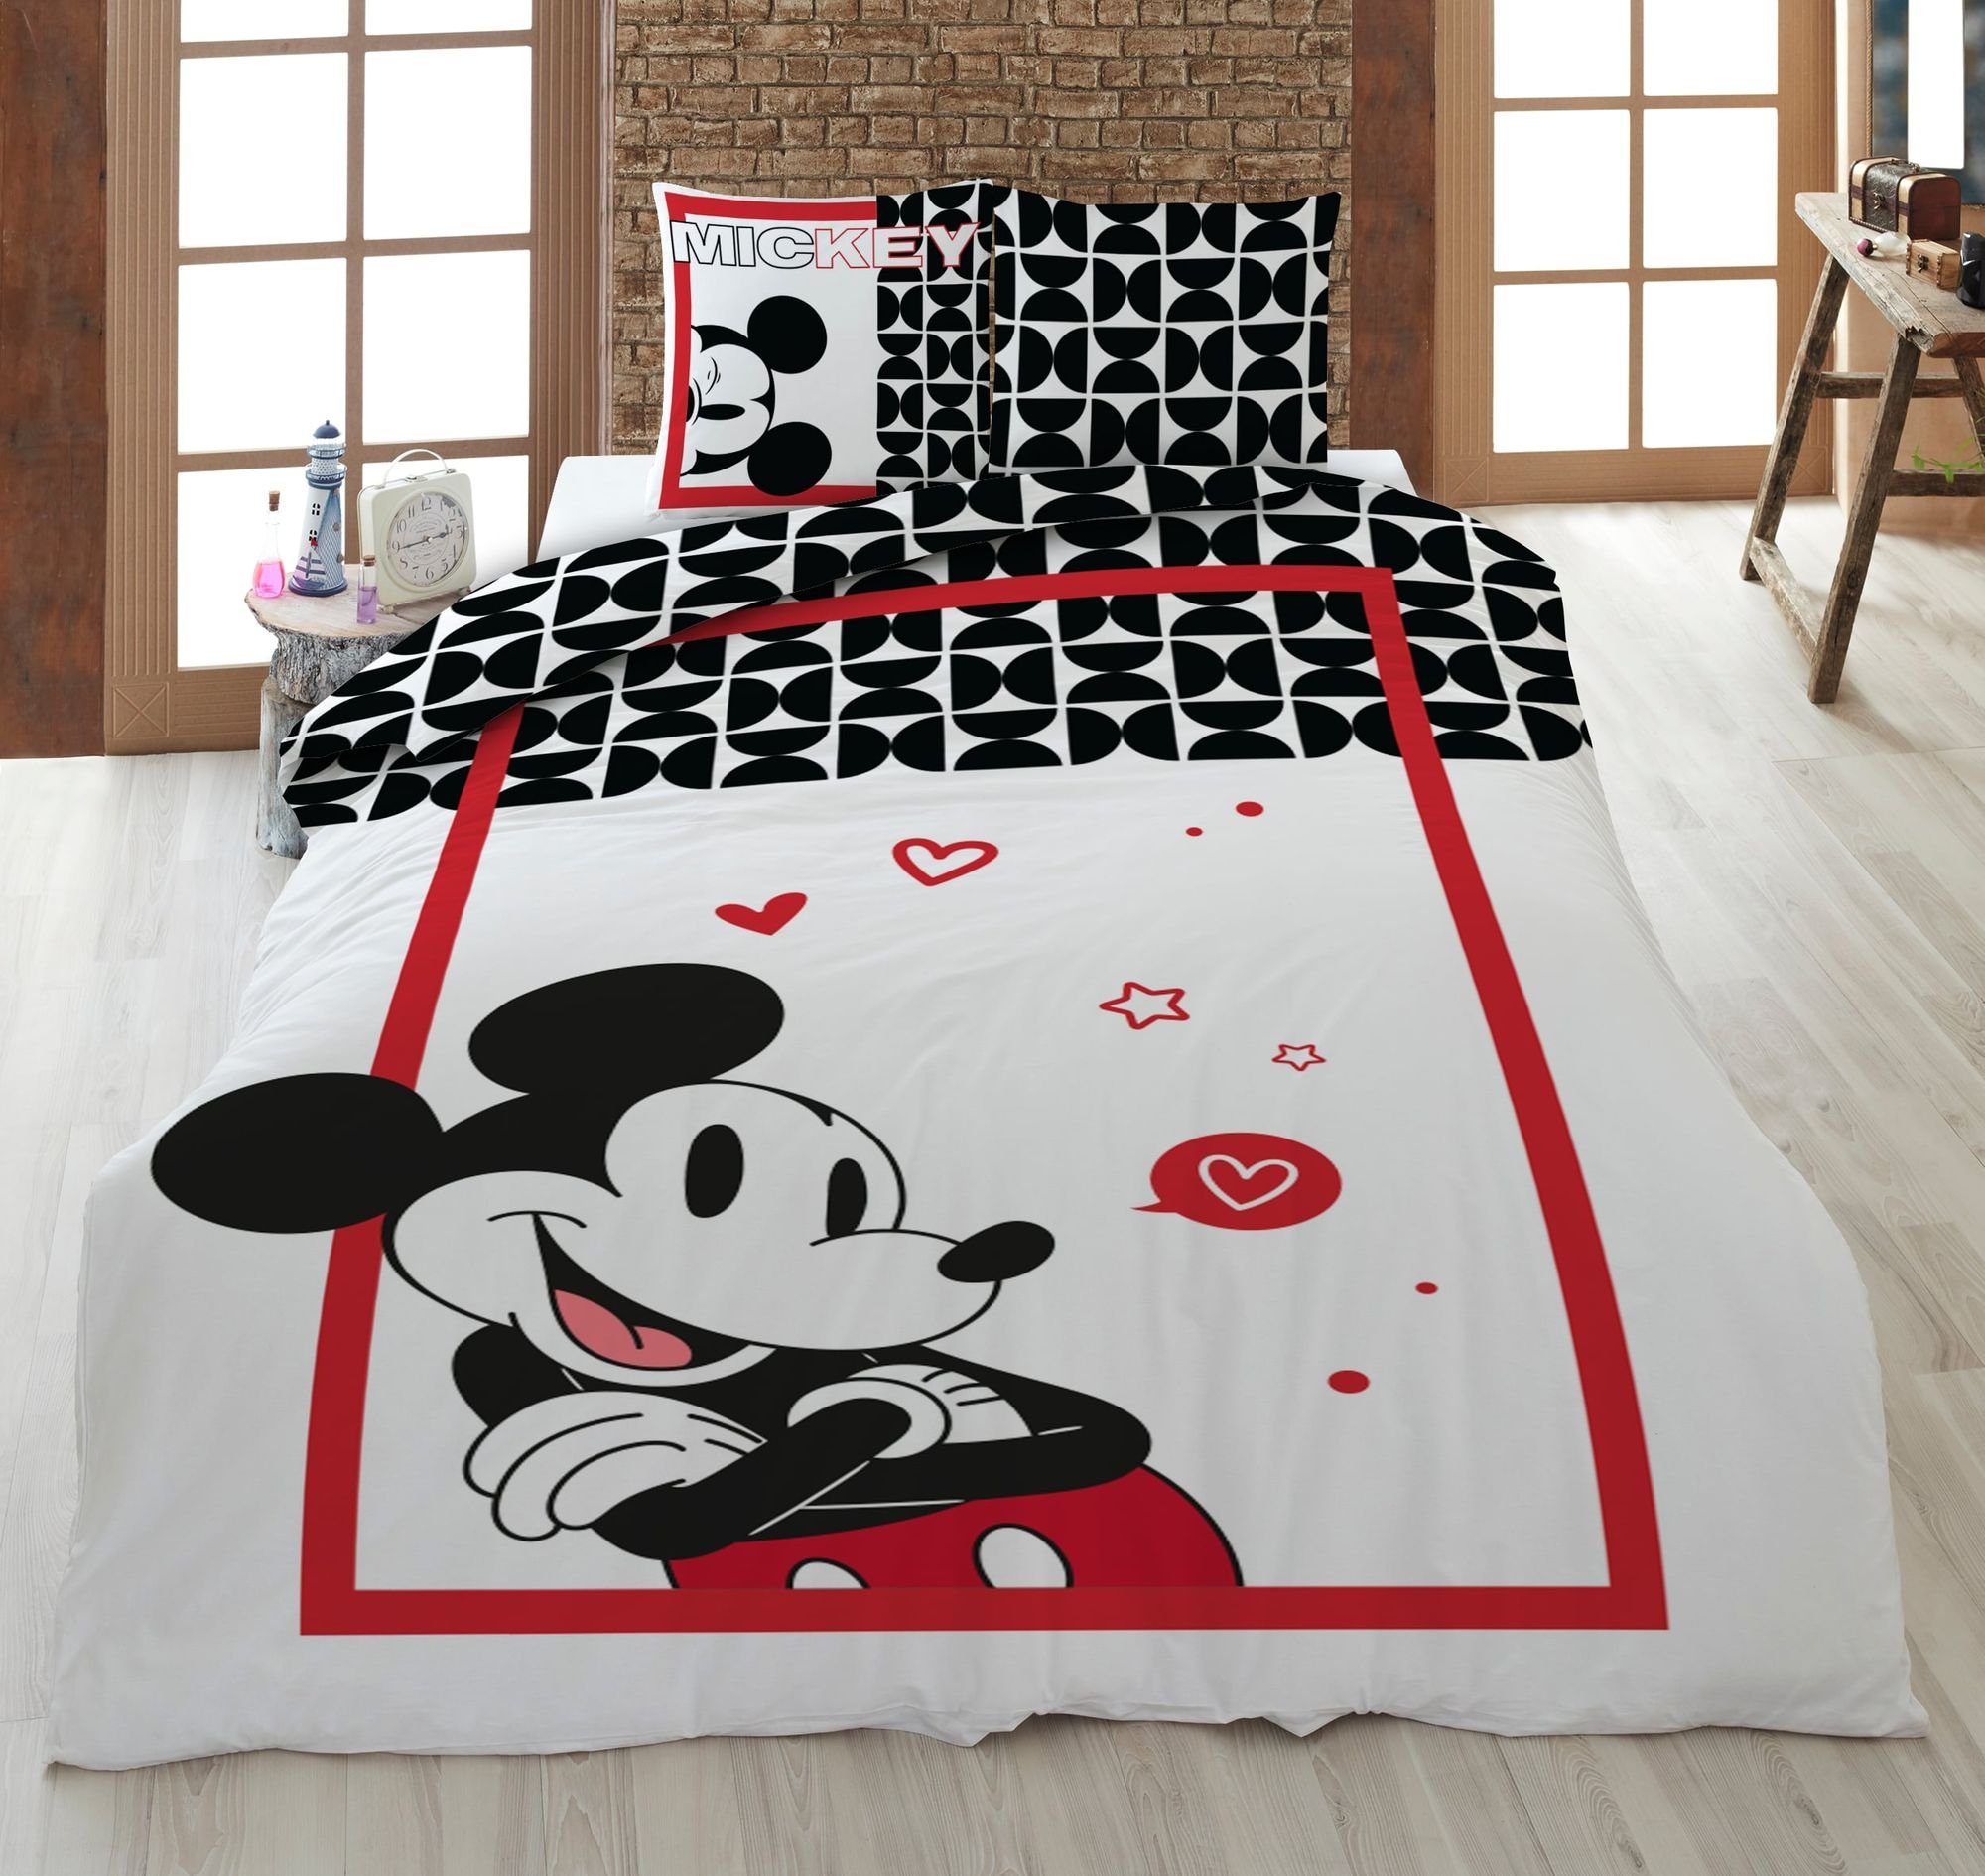 Kinderbettwäsche Bettwäsche Mickey in Love weiß rot 135 x 200 cm, 80 x 80 cm, AY!Max